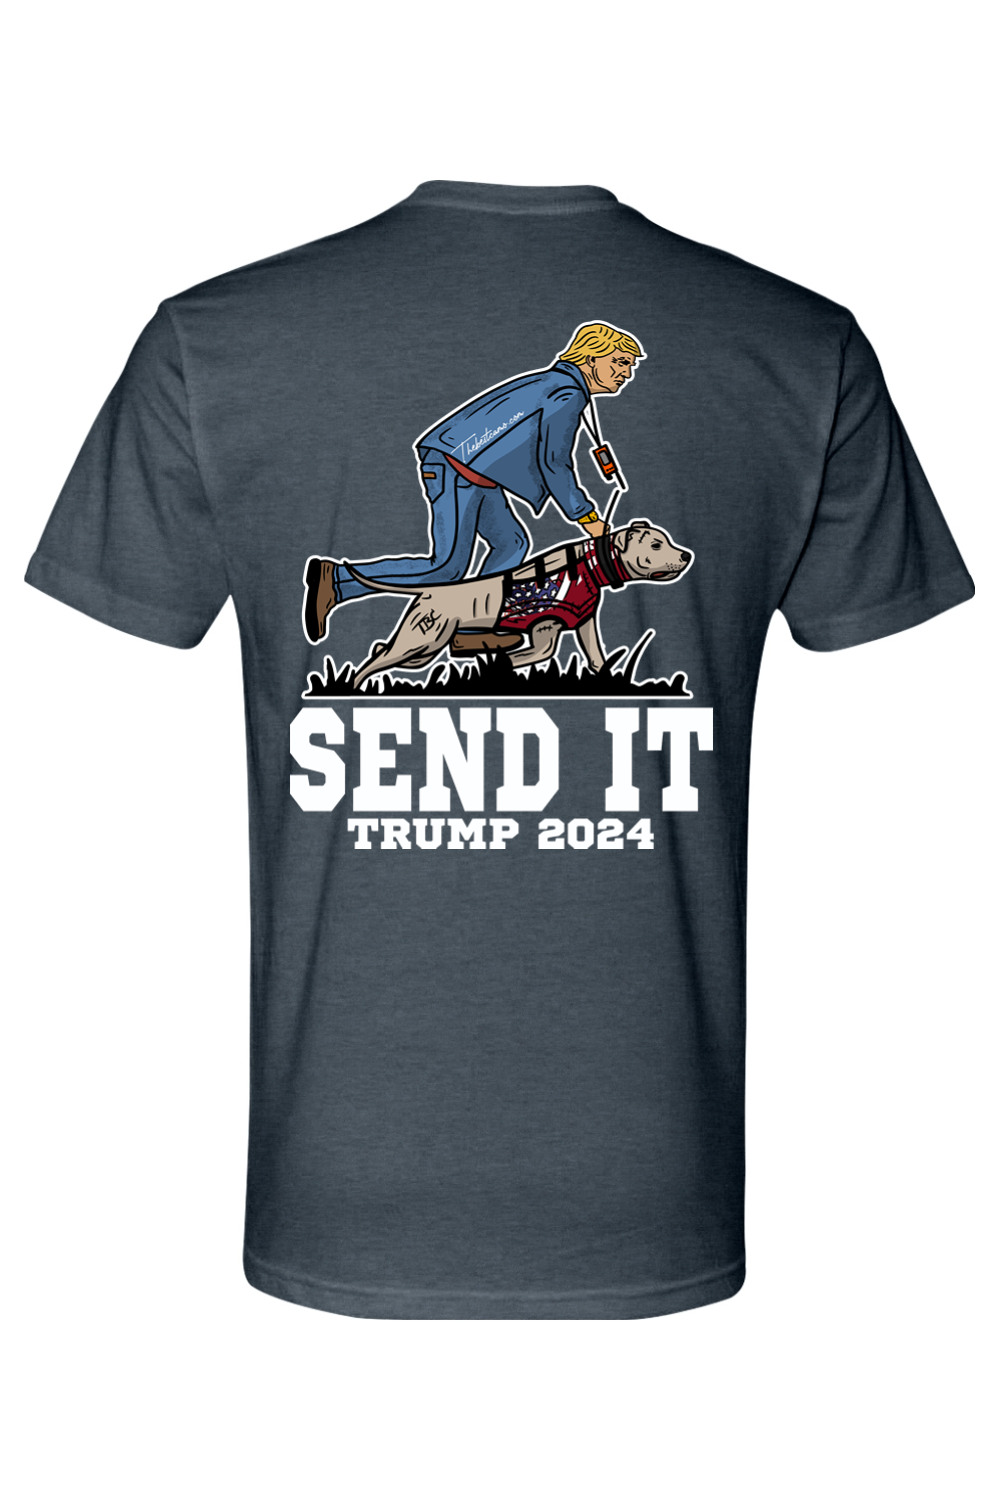 send it trump 2024